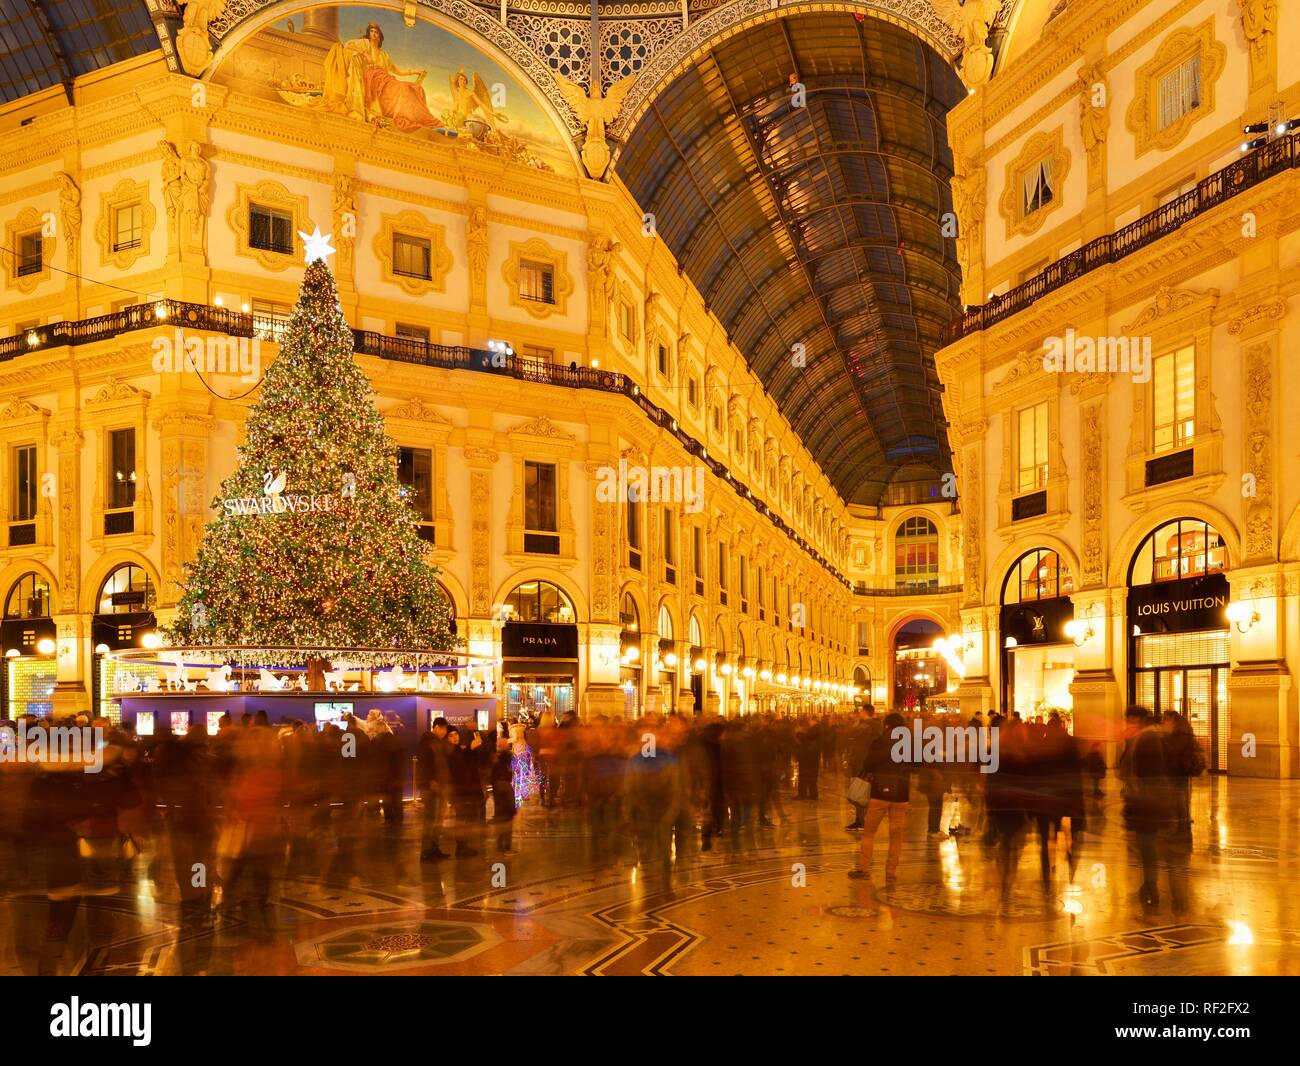 La gente maravillarse con árbol de Navidad y las luces de Navidad en el centro comercial de lujo, galería cubierta de la Galleria Vittorio Emanuele II Foto de stock